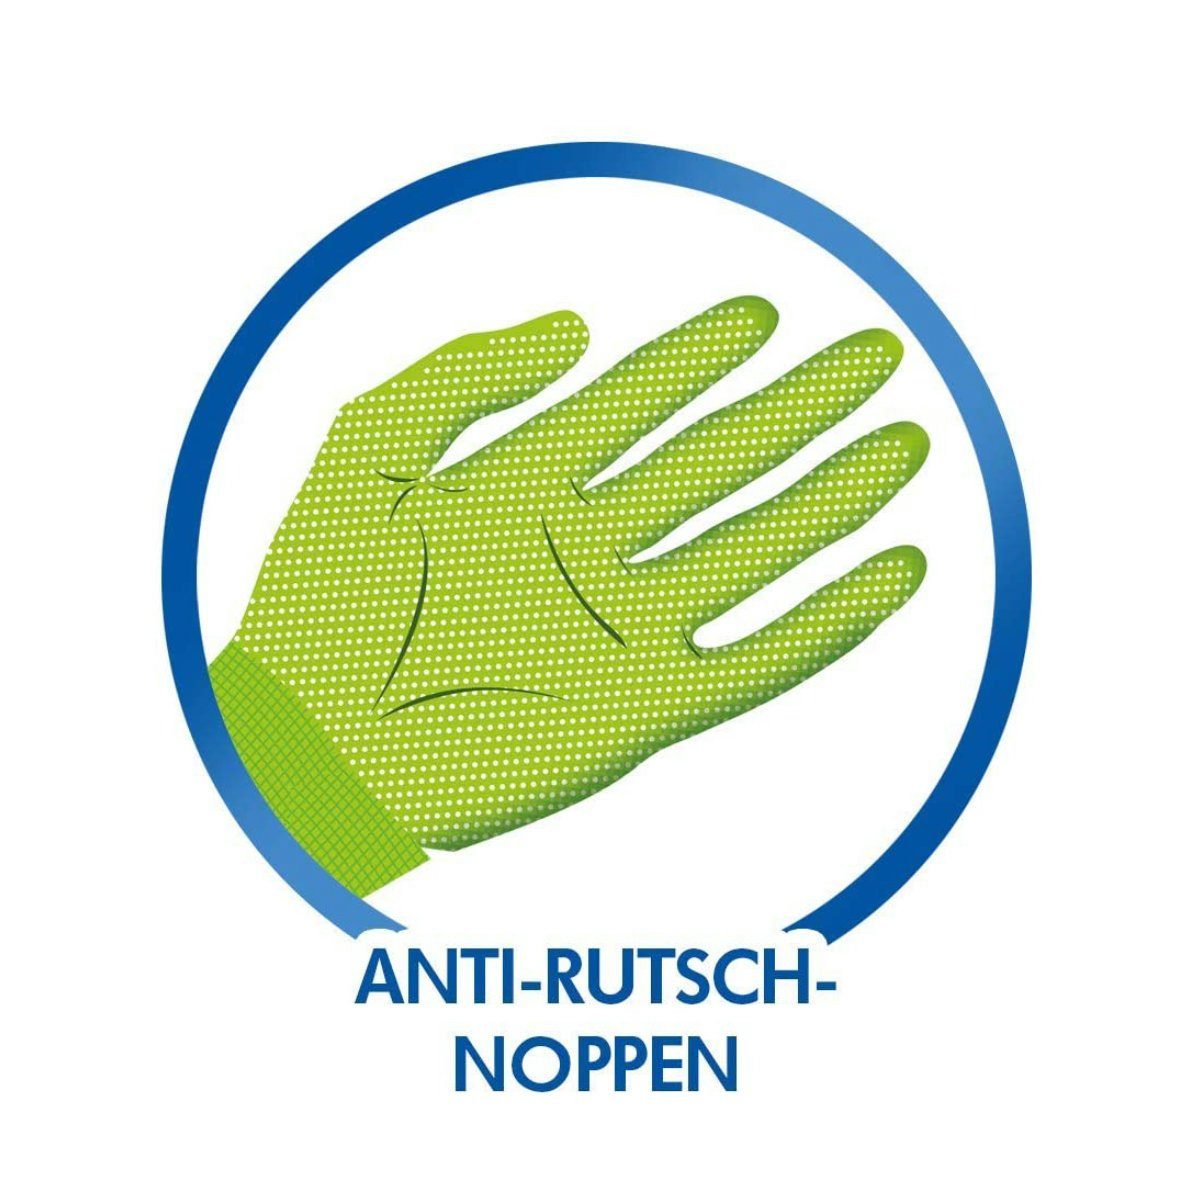 Aniti-Rutsch SPONTEX Noppen Gartenhandschuhe